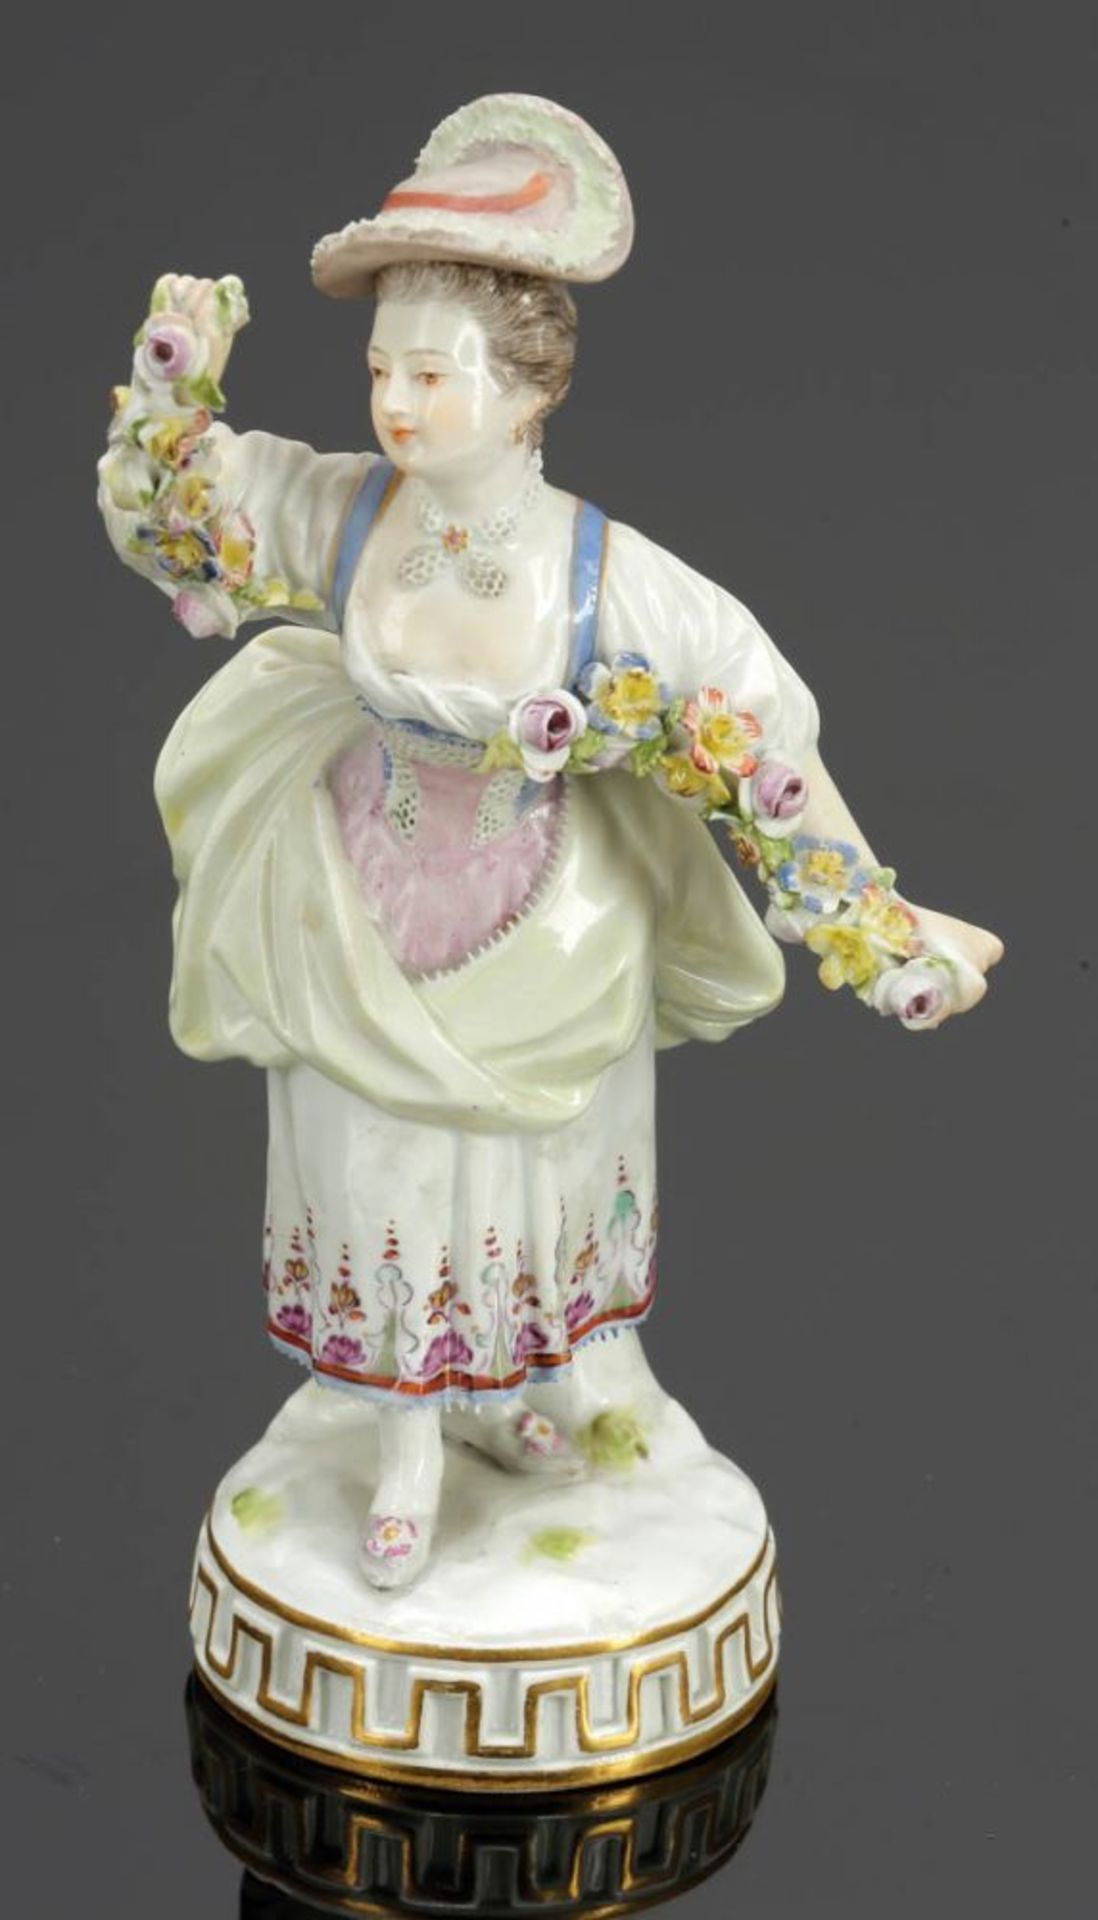 Gärtnerin tanzend Königliche Porzellan Manufaktur, Meissen um 1850. Porzellan, weiß, glasiert.